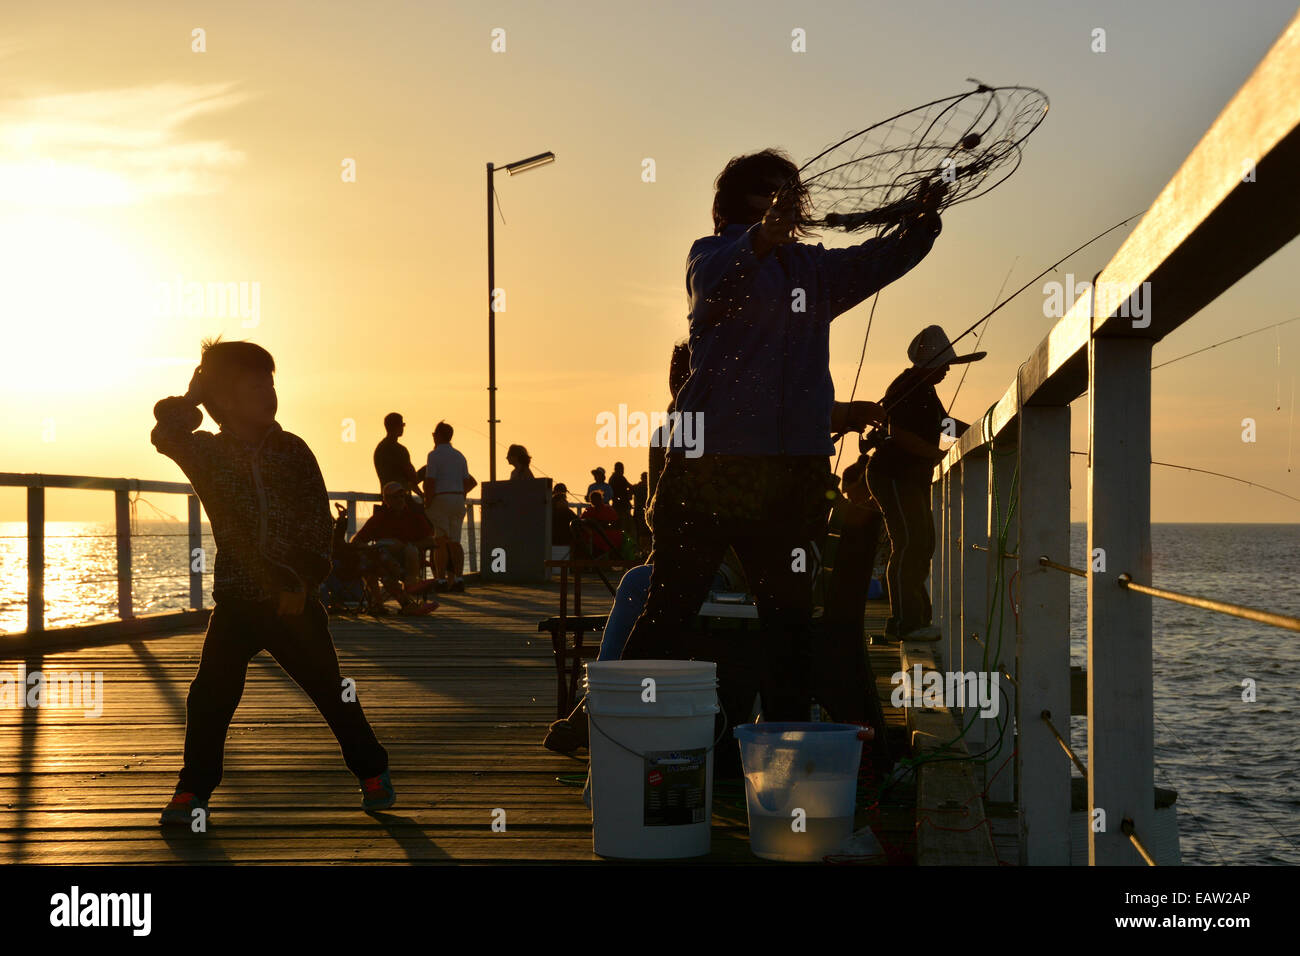 Siluetas de gente pescando en la escollera de semáforo en el sur de Australia al atardecer Foto de stock